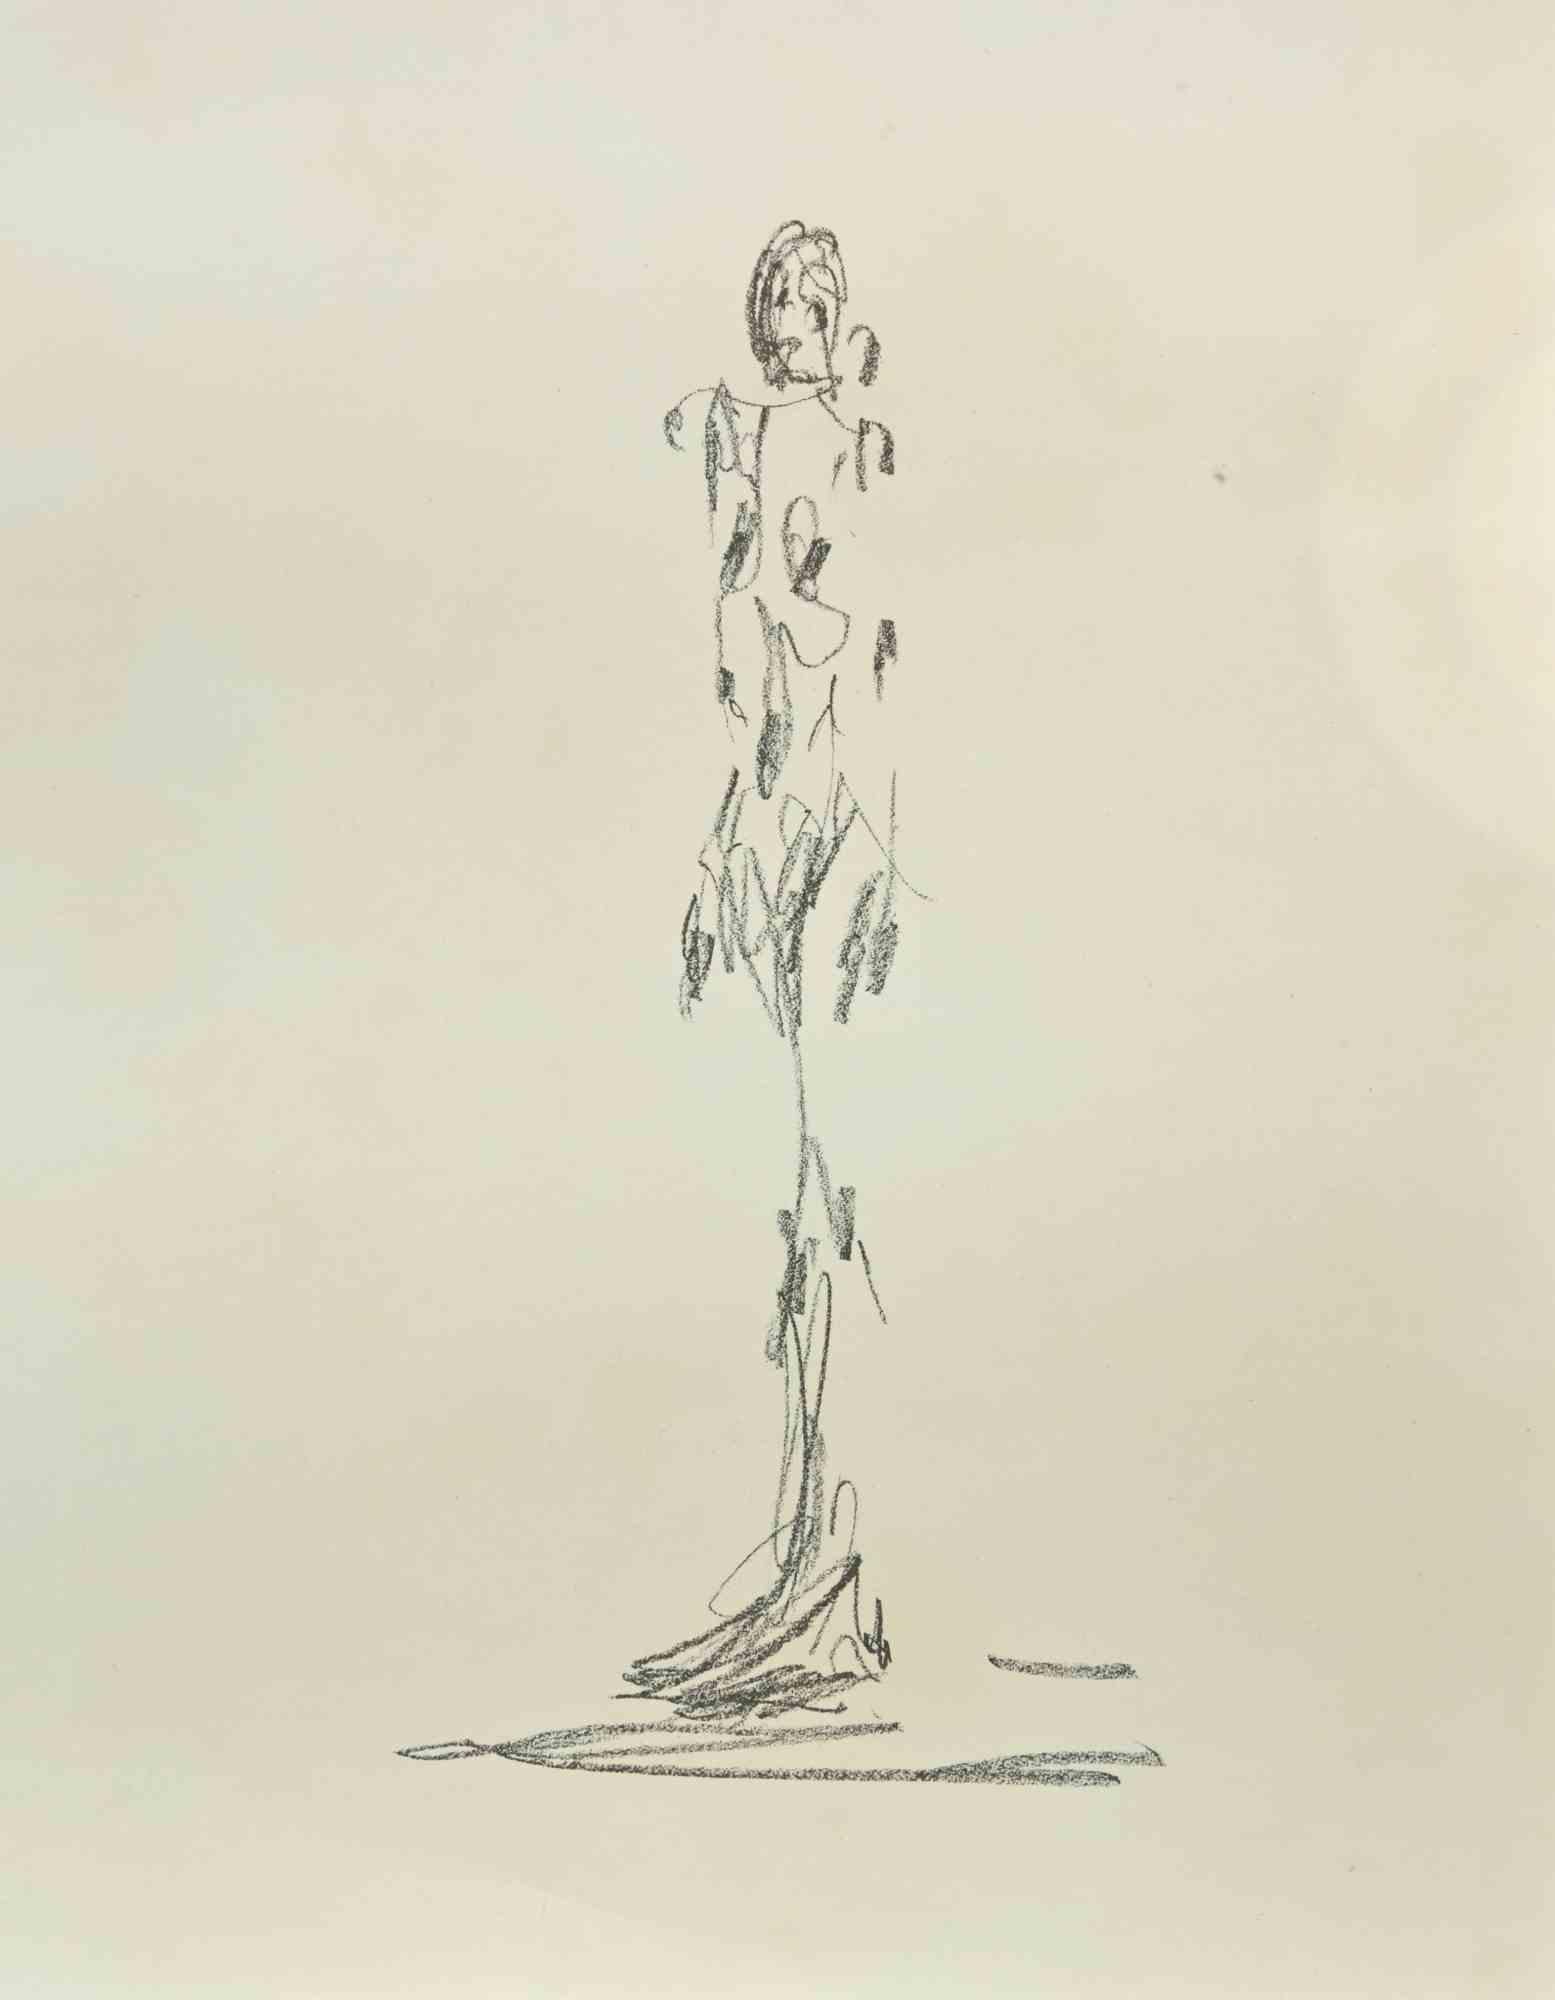 Portrait from Derriere Le Miroir ist eine Lithographie nach Alberto Giacometti aus dem Jahr 1964.

Das Kunstwerk stammt aus dem Kunstmagazin Derriere Le Miroir.  

Gedruckt bei Ateliers de Maeght, Paris, 1964.

Gute Bedingungen.